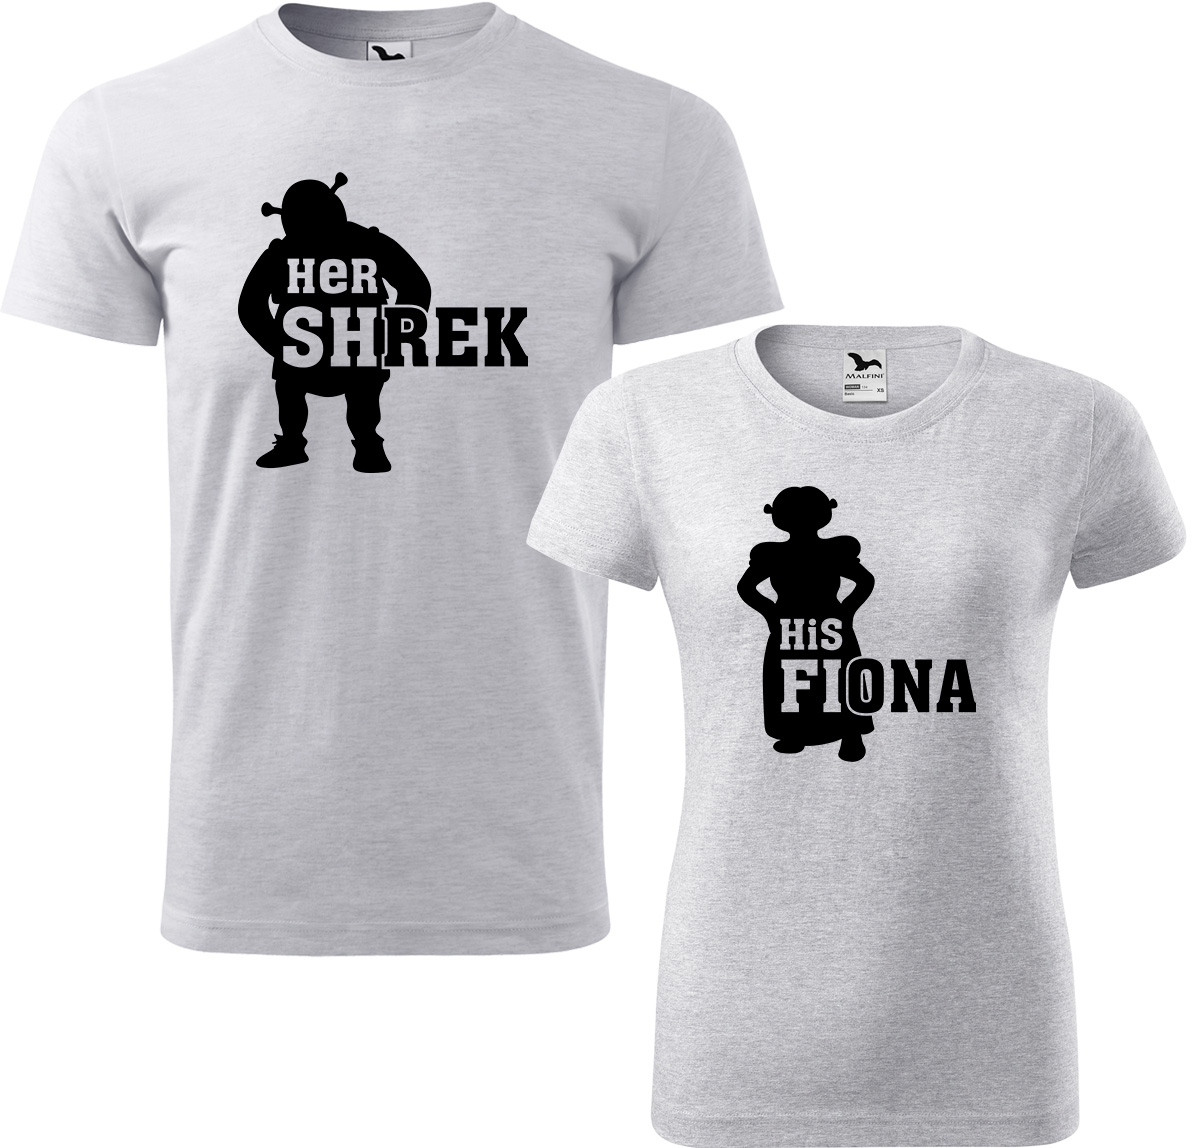 Trička pro páry - Shrek a Fiona Barva: Světle šedý melír (03), Velikost dámské tričko: S, Velikost pánské tričko: 3XL